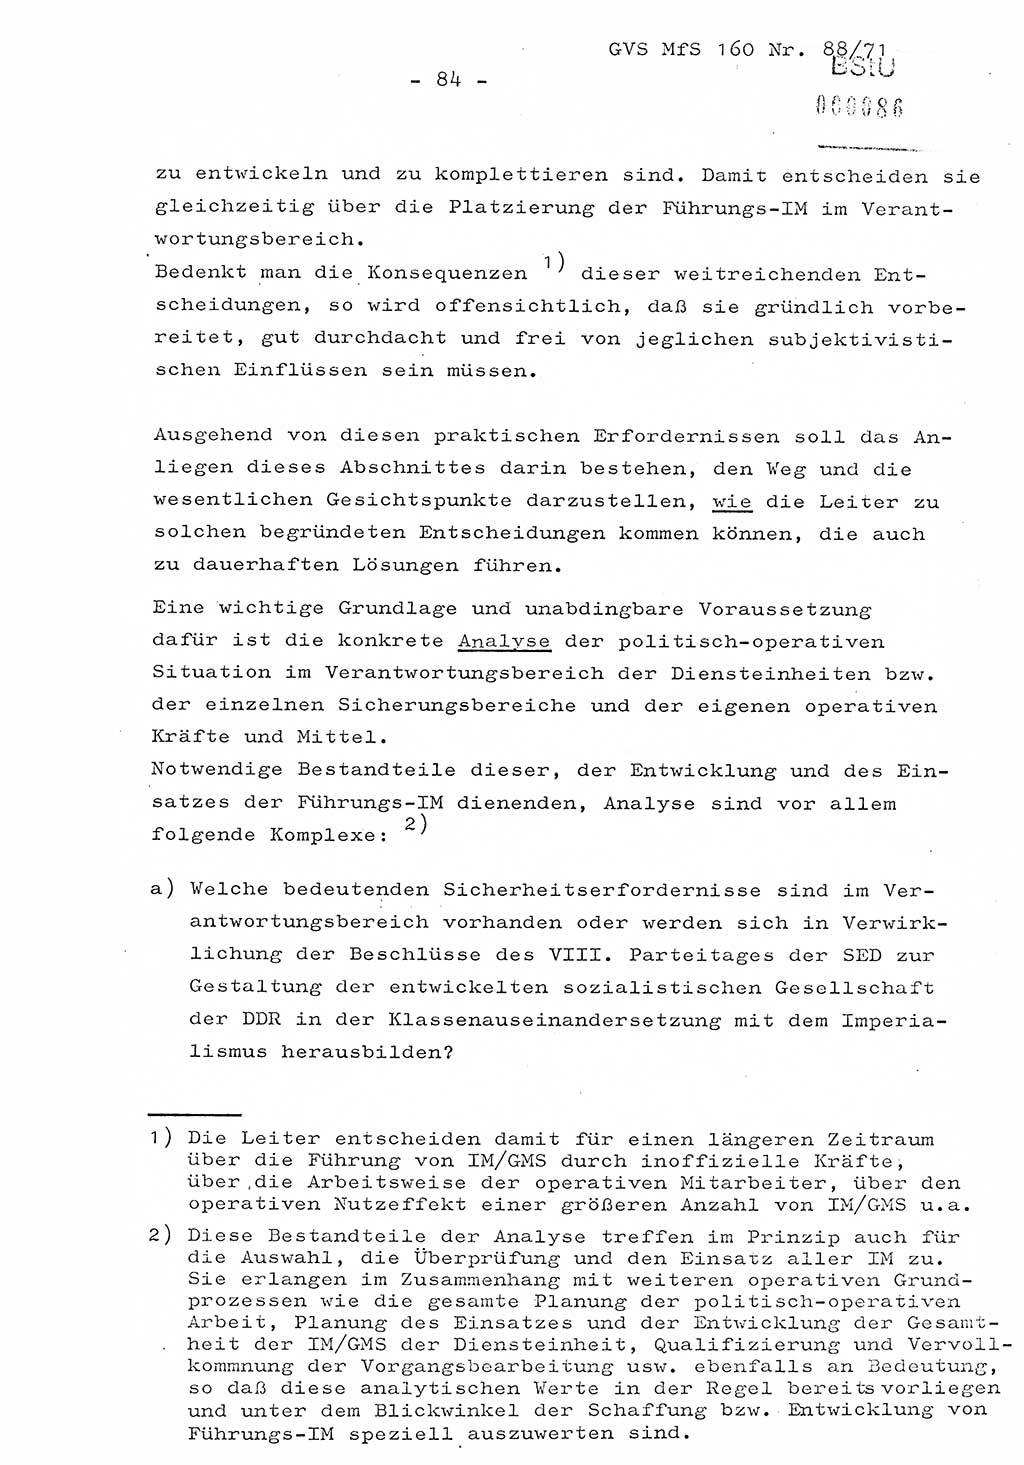 Dissertation Oberstleutnant Josef Schwarz (BV Schwerin), Major Fritz Amm (JHS), Hauptmann Peter Gräßler (JHS), Ministerium für Staatssicherheit (MfS) [Deutsche Demokratische Republik (DDR)], Juristische Hochschule (JHS), Geheime Verschlußsache (GVS) 160-88/71, Potsdam 1972, Seite 84 (Diss. MfS DDR JHS GVS 160-88/71 1972, S. 84)